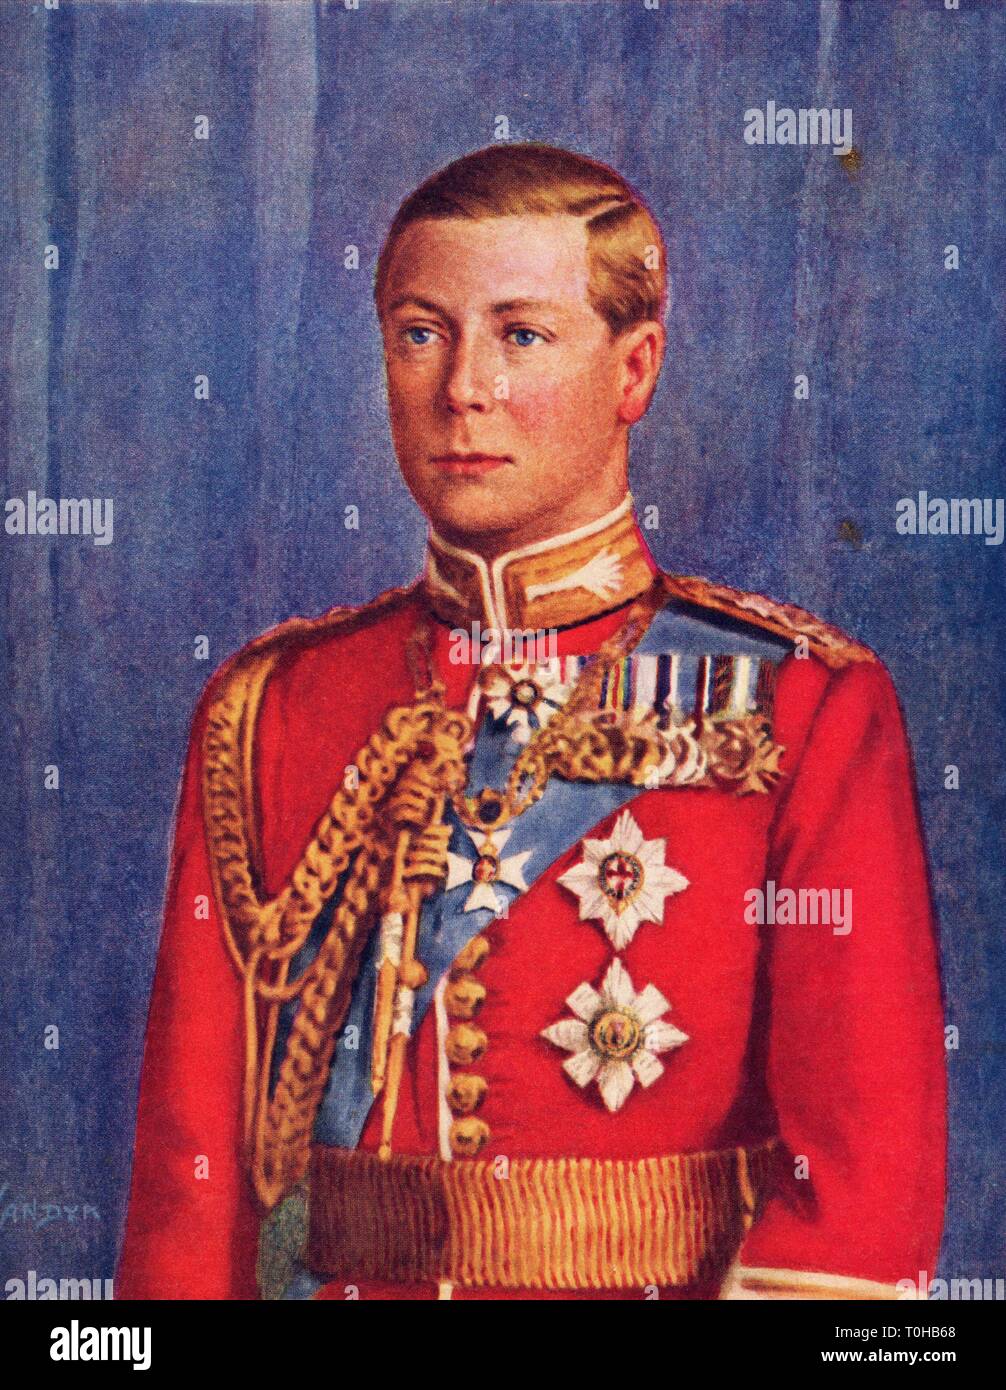 El Rey del Reino Unido y Emperador de la India, Edward VIII Foto de stock